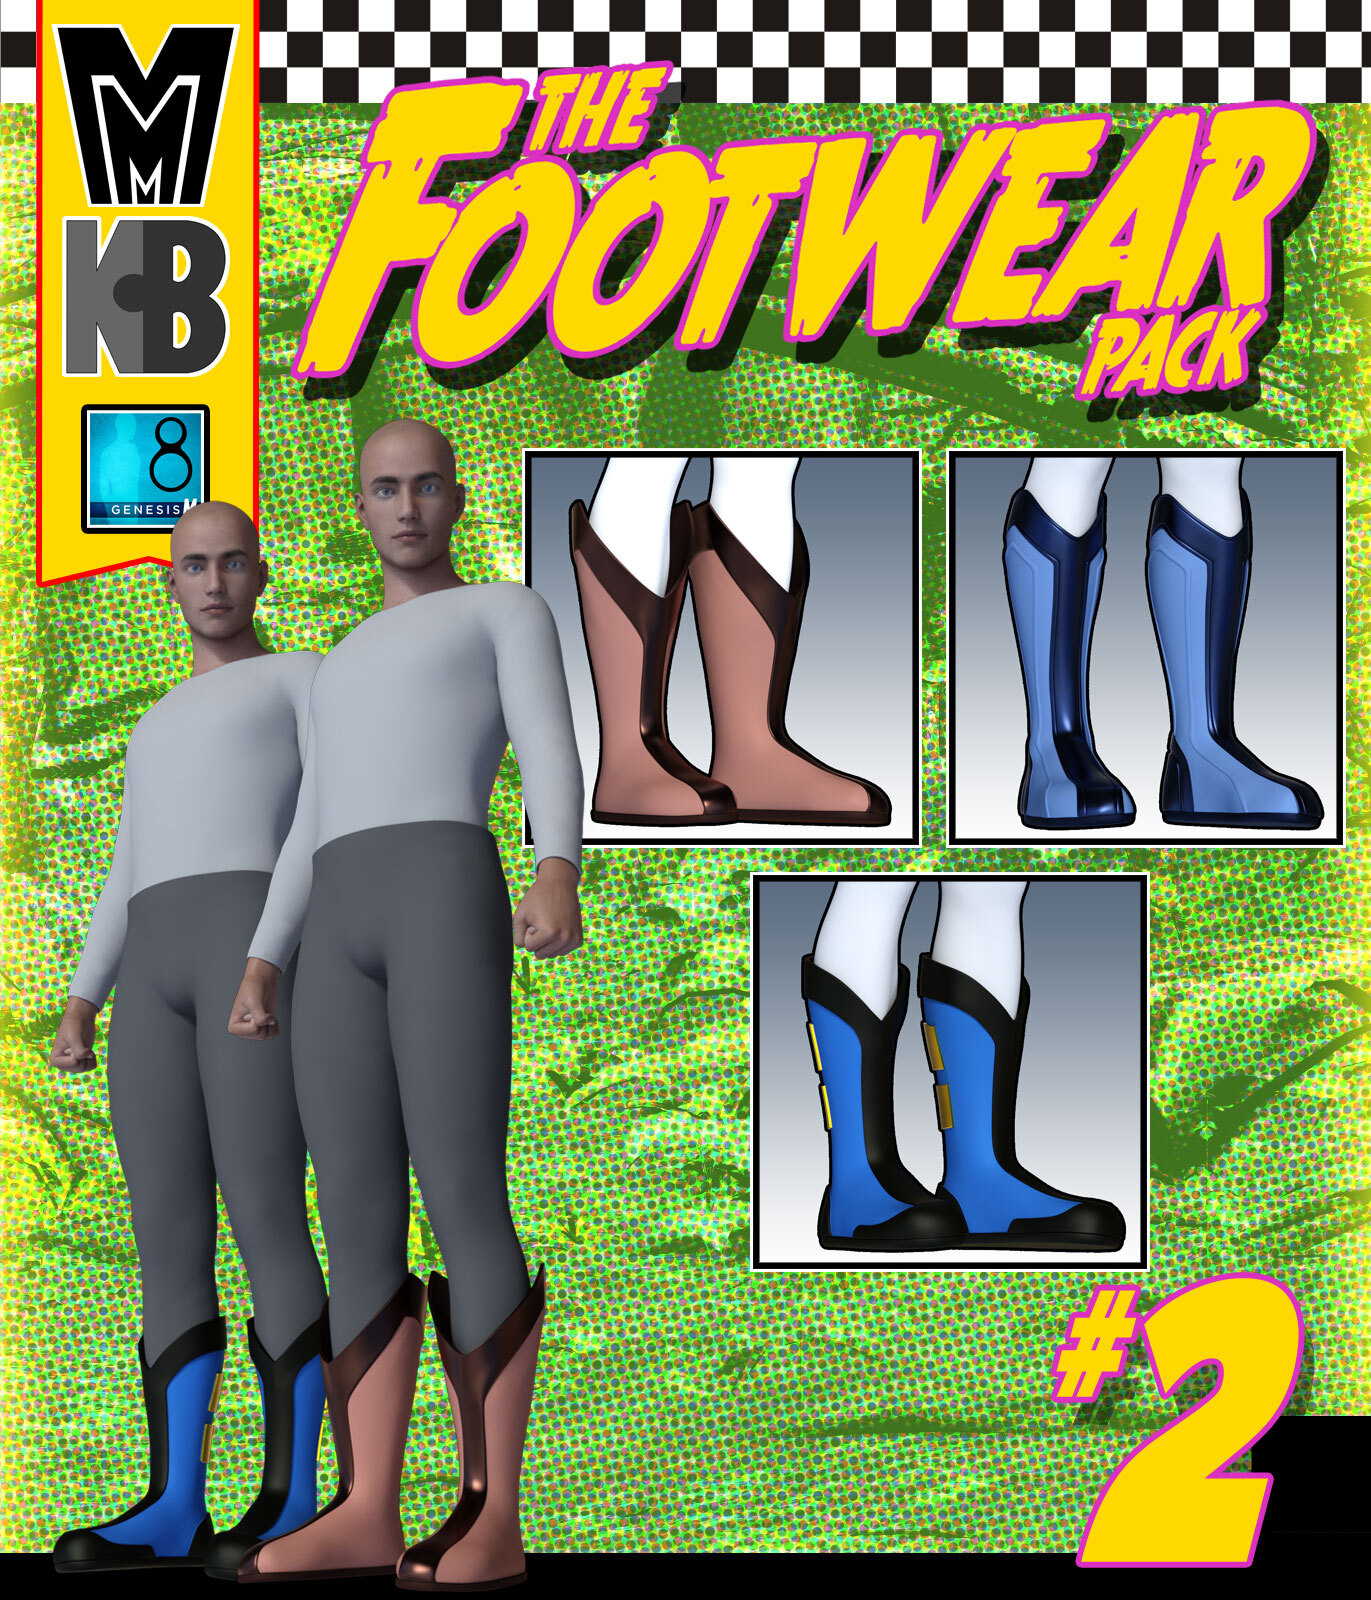 Footwear 002 MMKBG8M by: MightyMite, 3D Models by Daz 3D